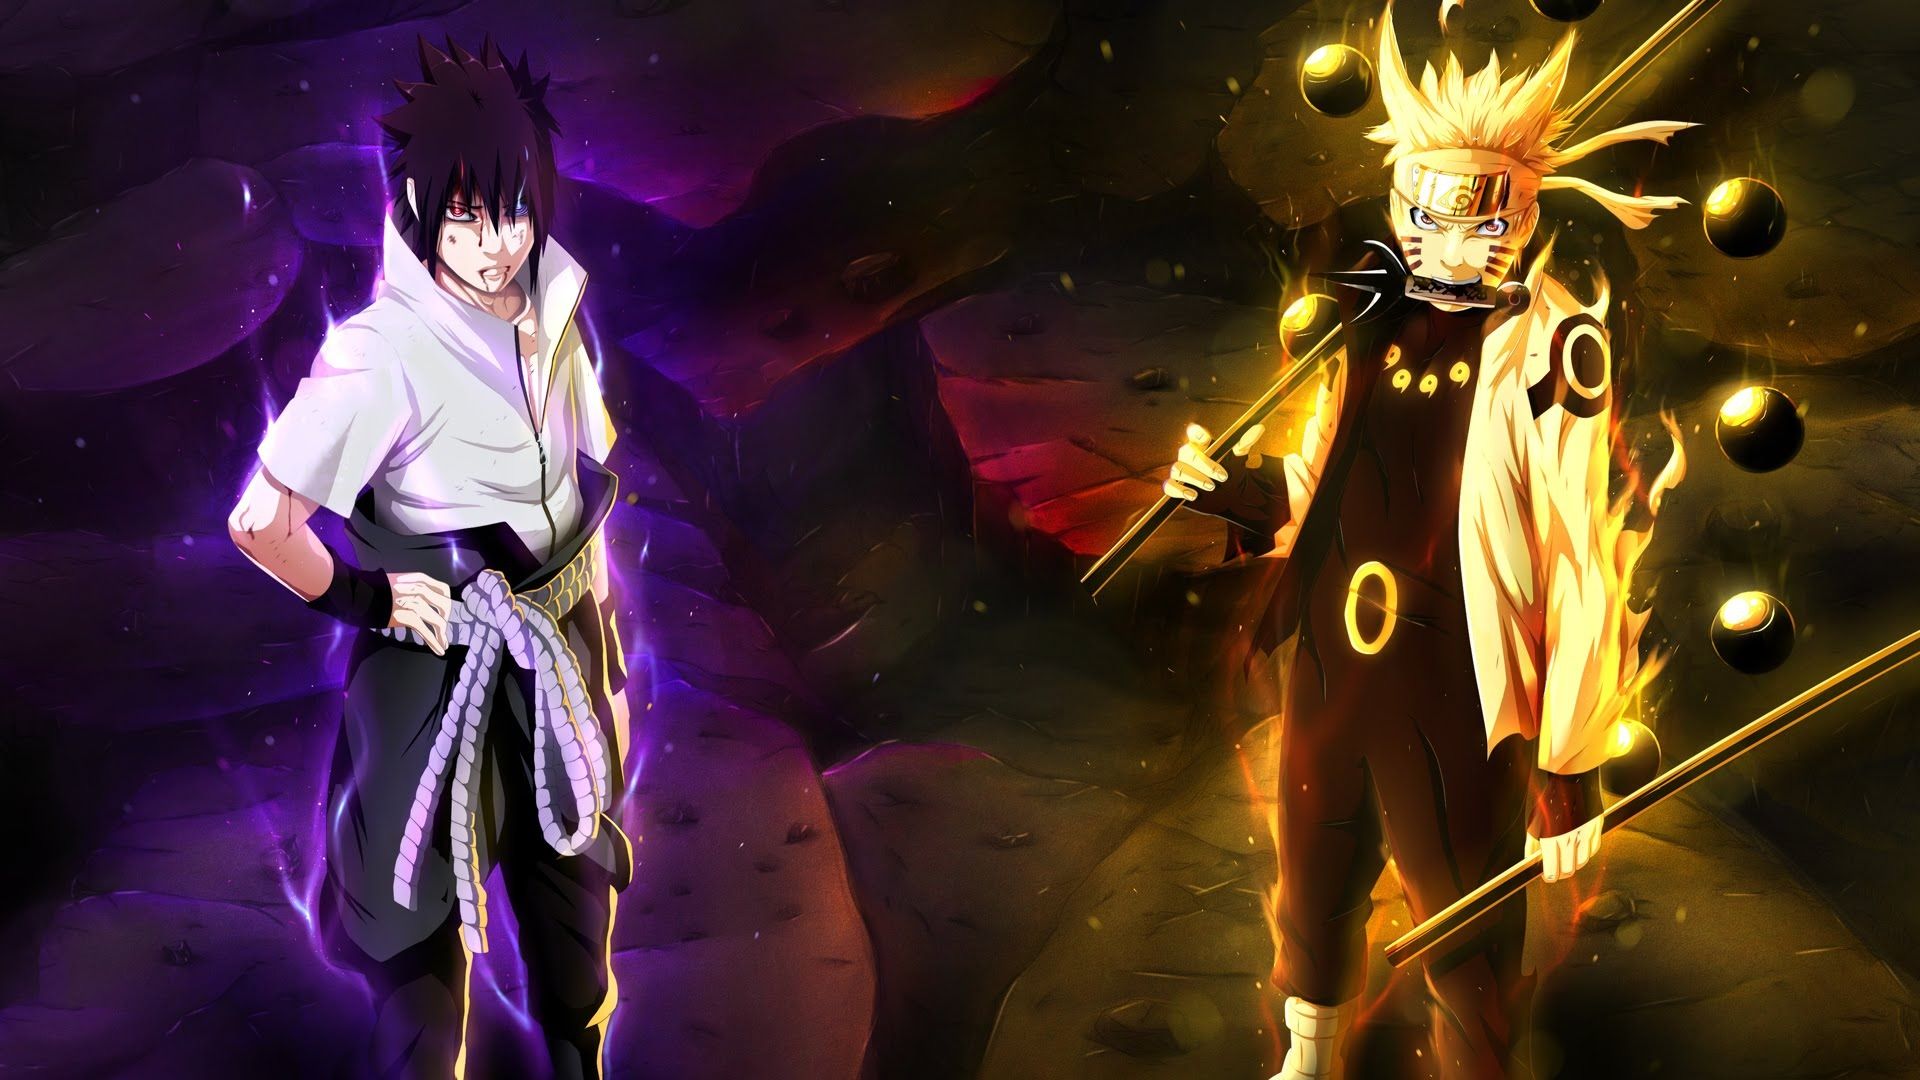 Who is stronger, Naruto or Sasuke?